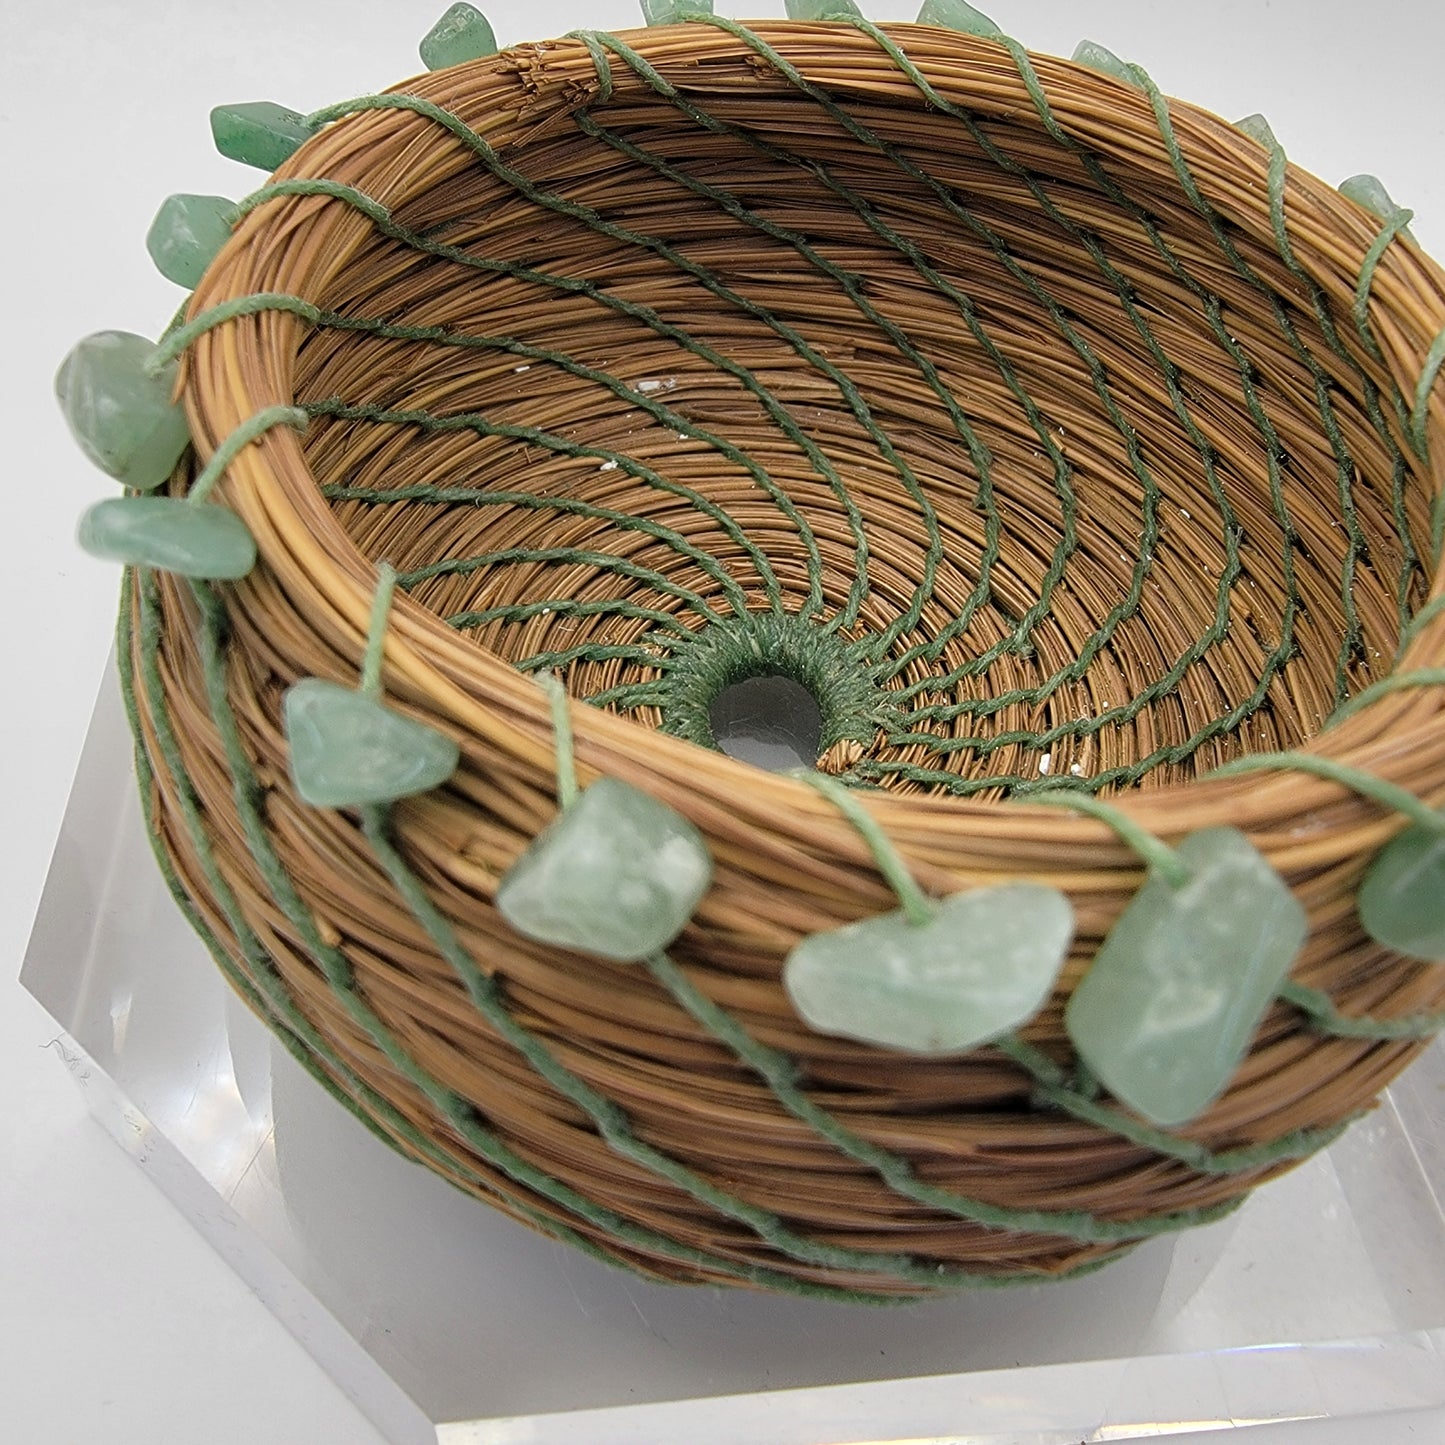 Pine Needle Basket with Jade